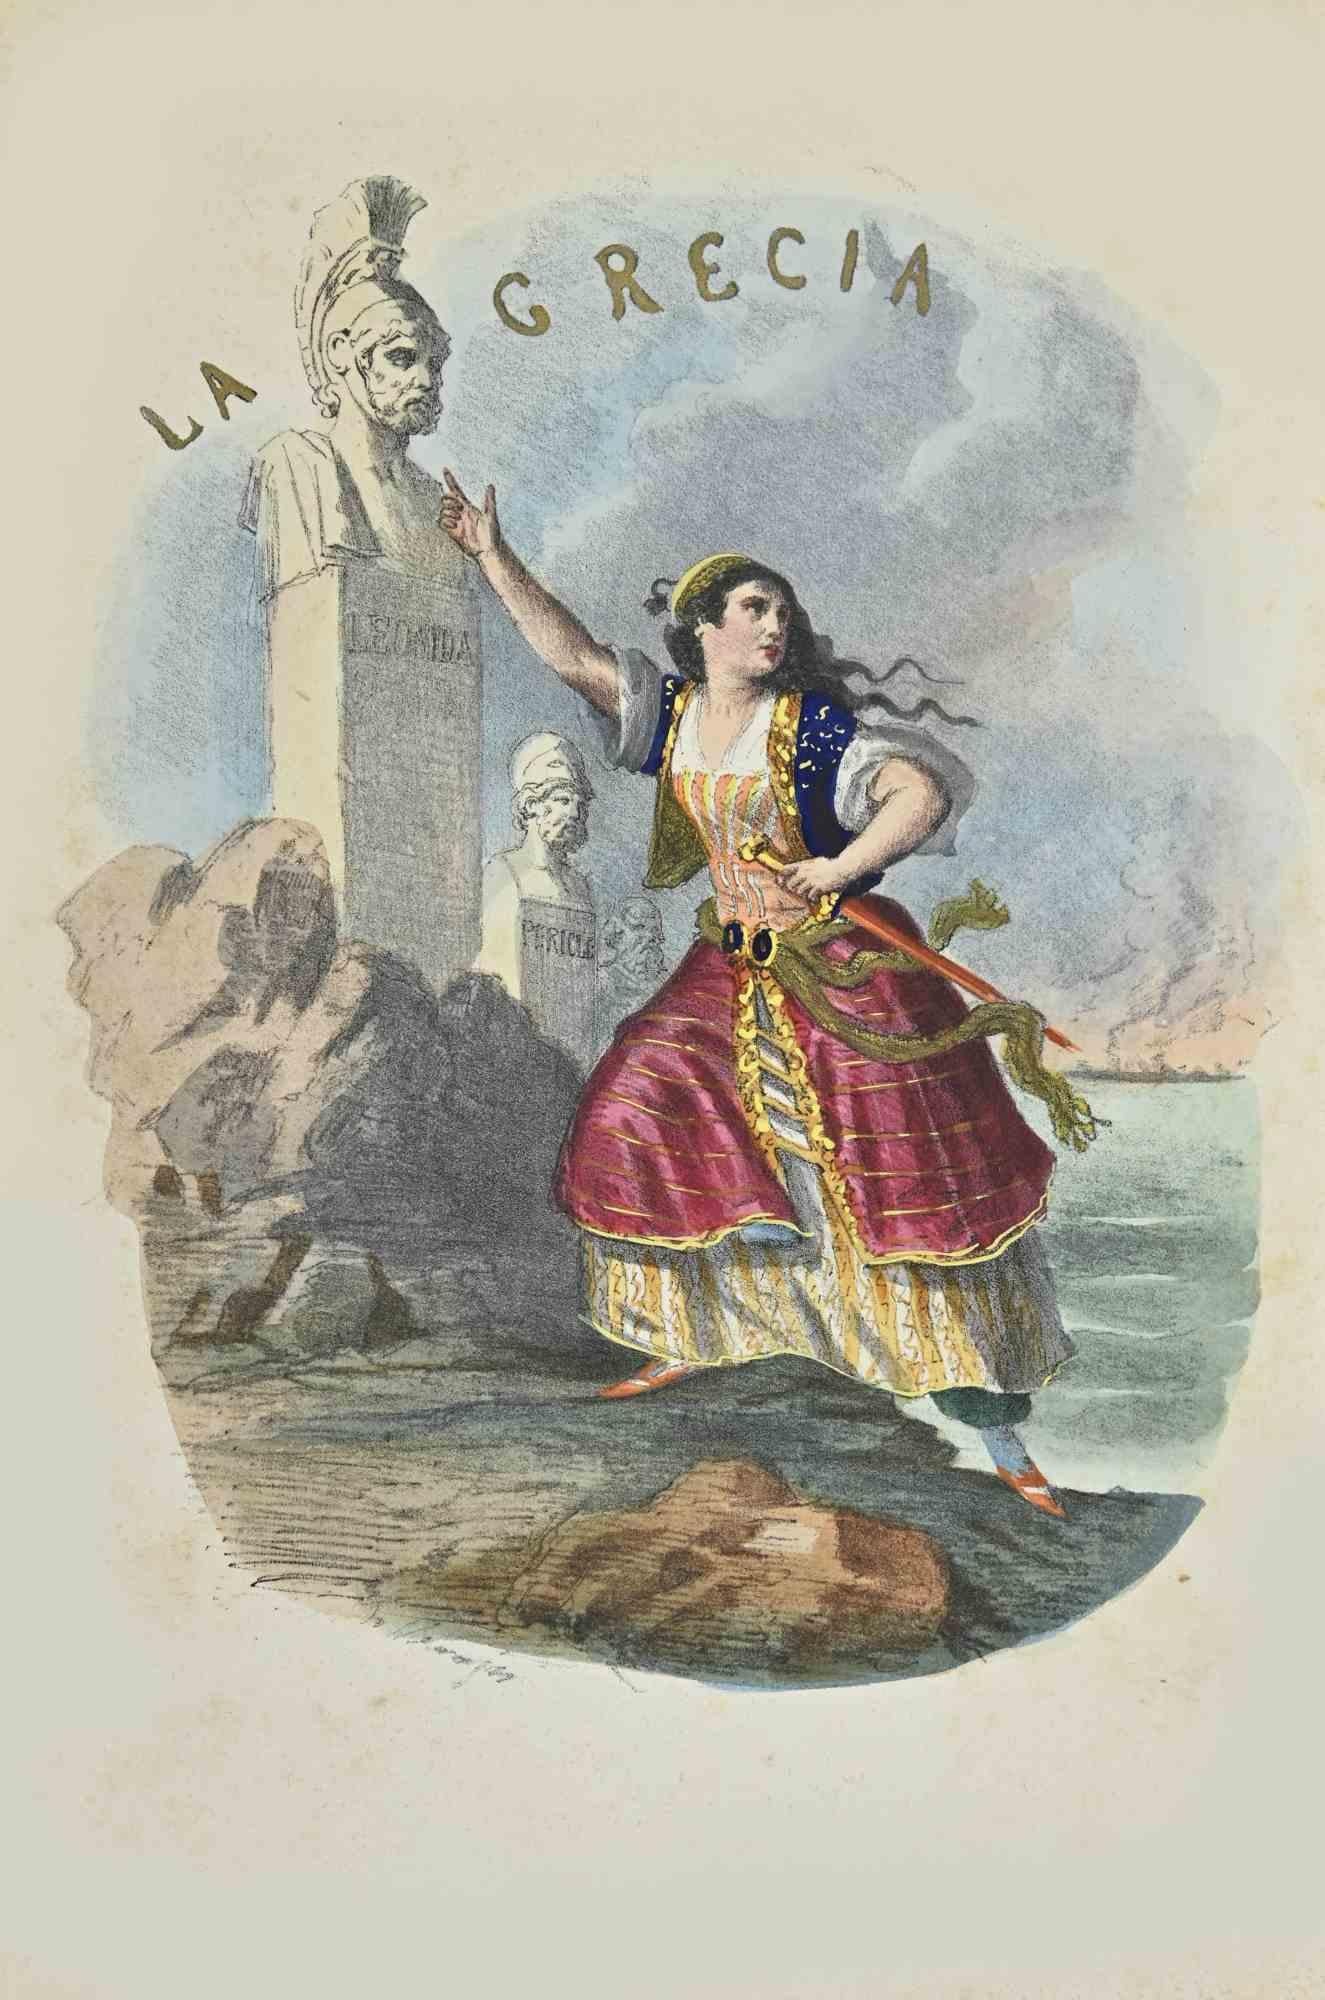 Unknown Figurative Print - Greece - Lithograph - 1862